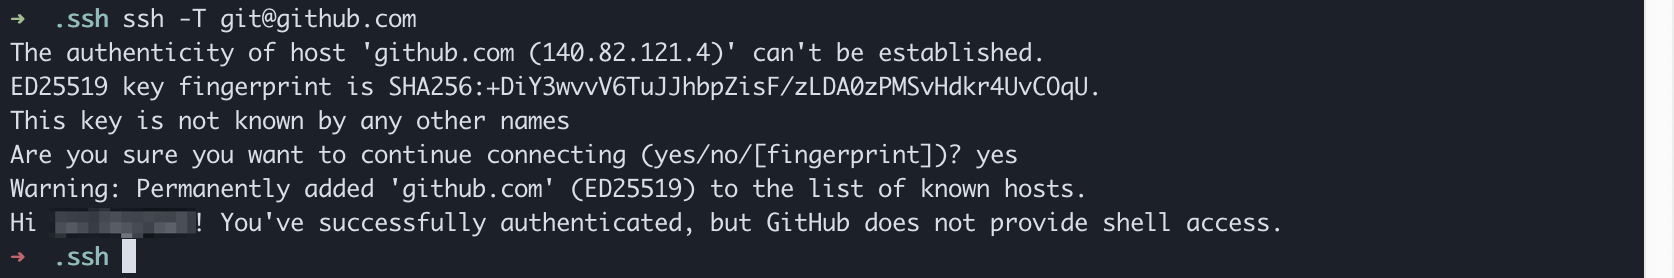 Hinzufügen des GitHub-Server zu den SSH Known-Hosts